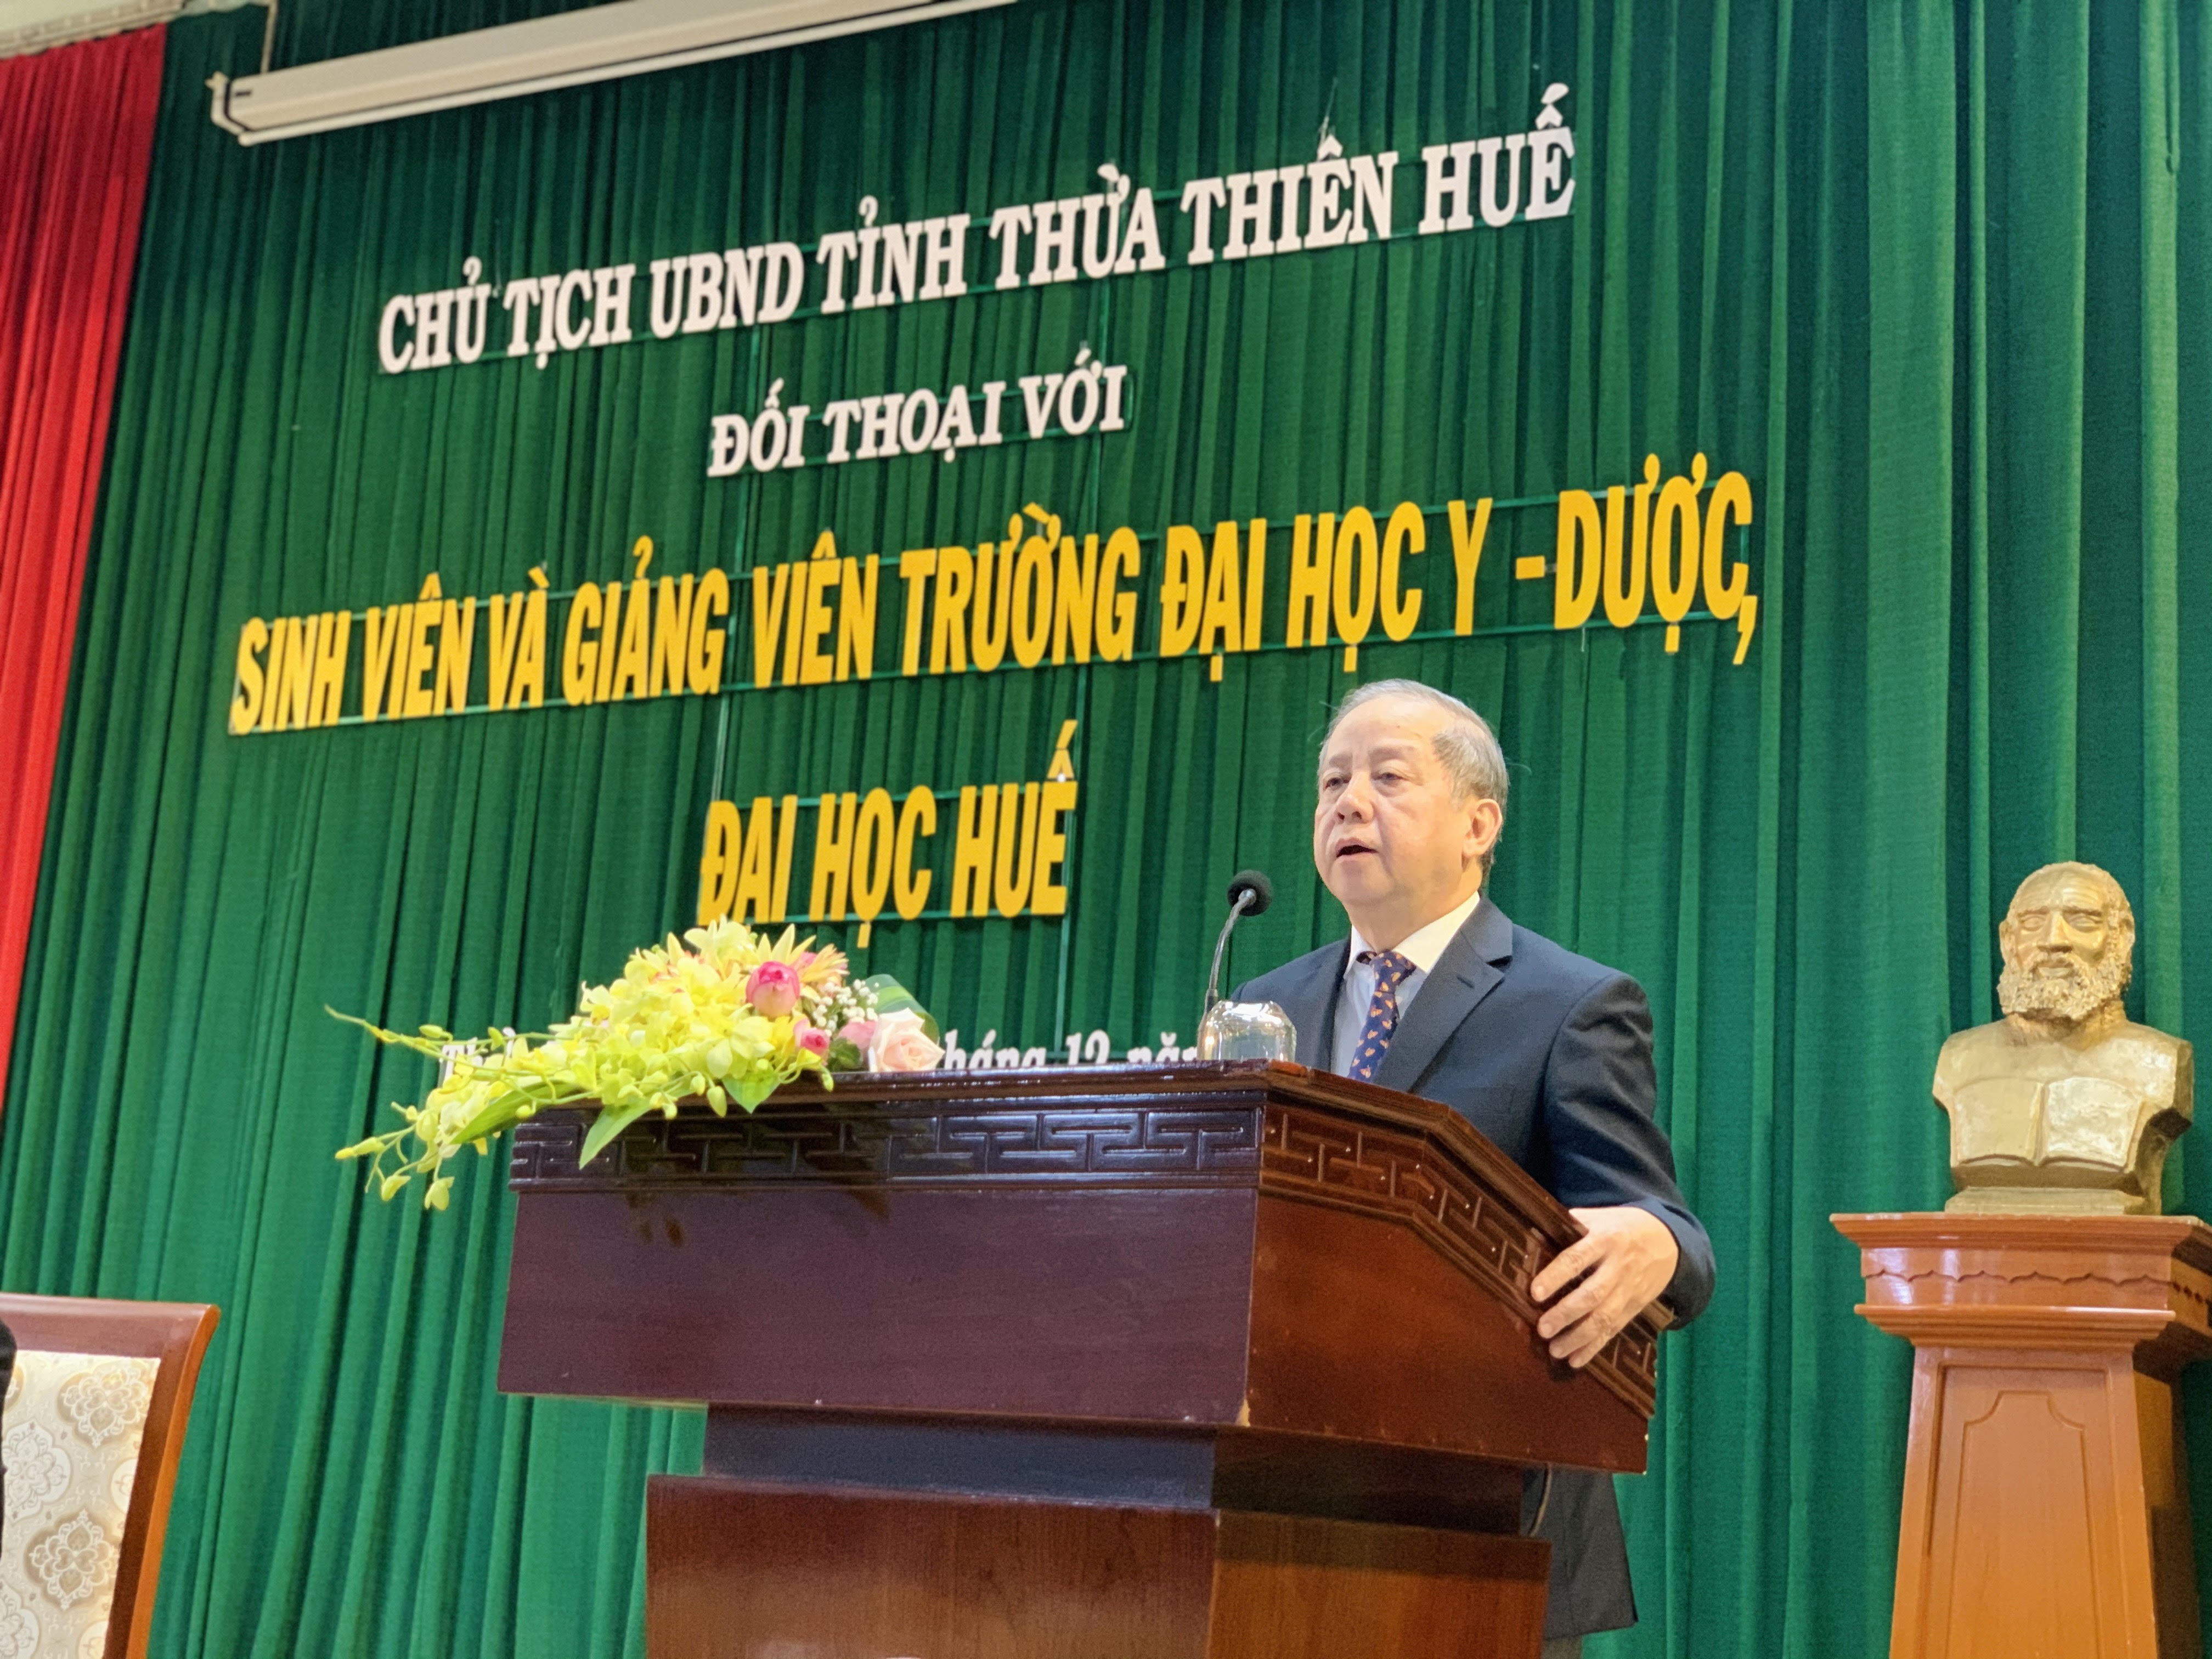 Chủ tịch UBND tỉnh Thừa Thiên Huế đối thoại với cán bộ và sinh viên Trường Đại học Y - Dược